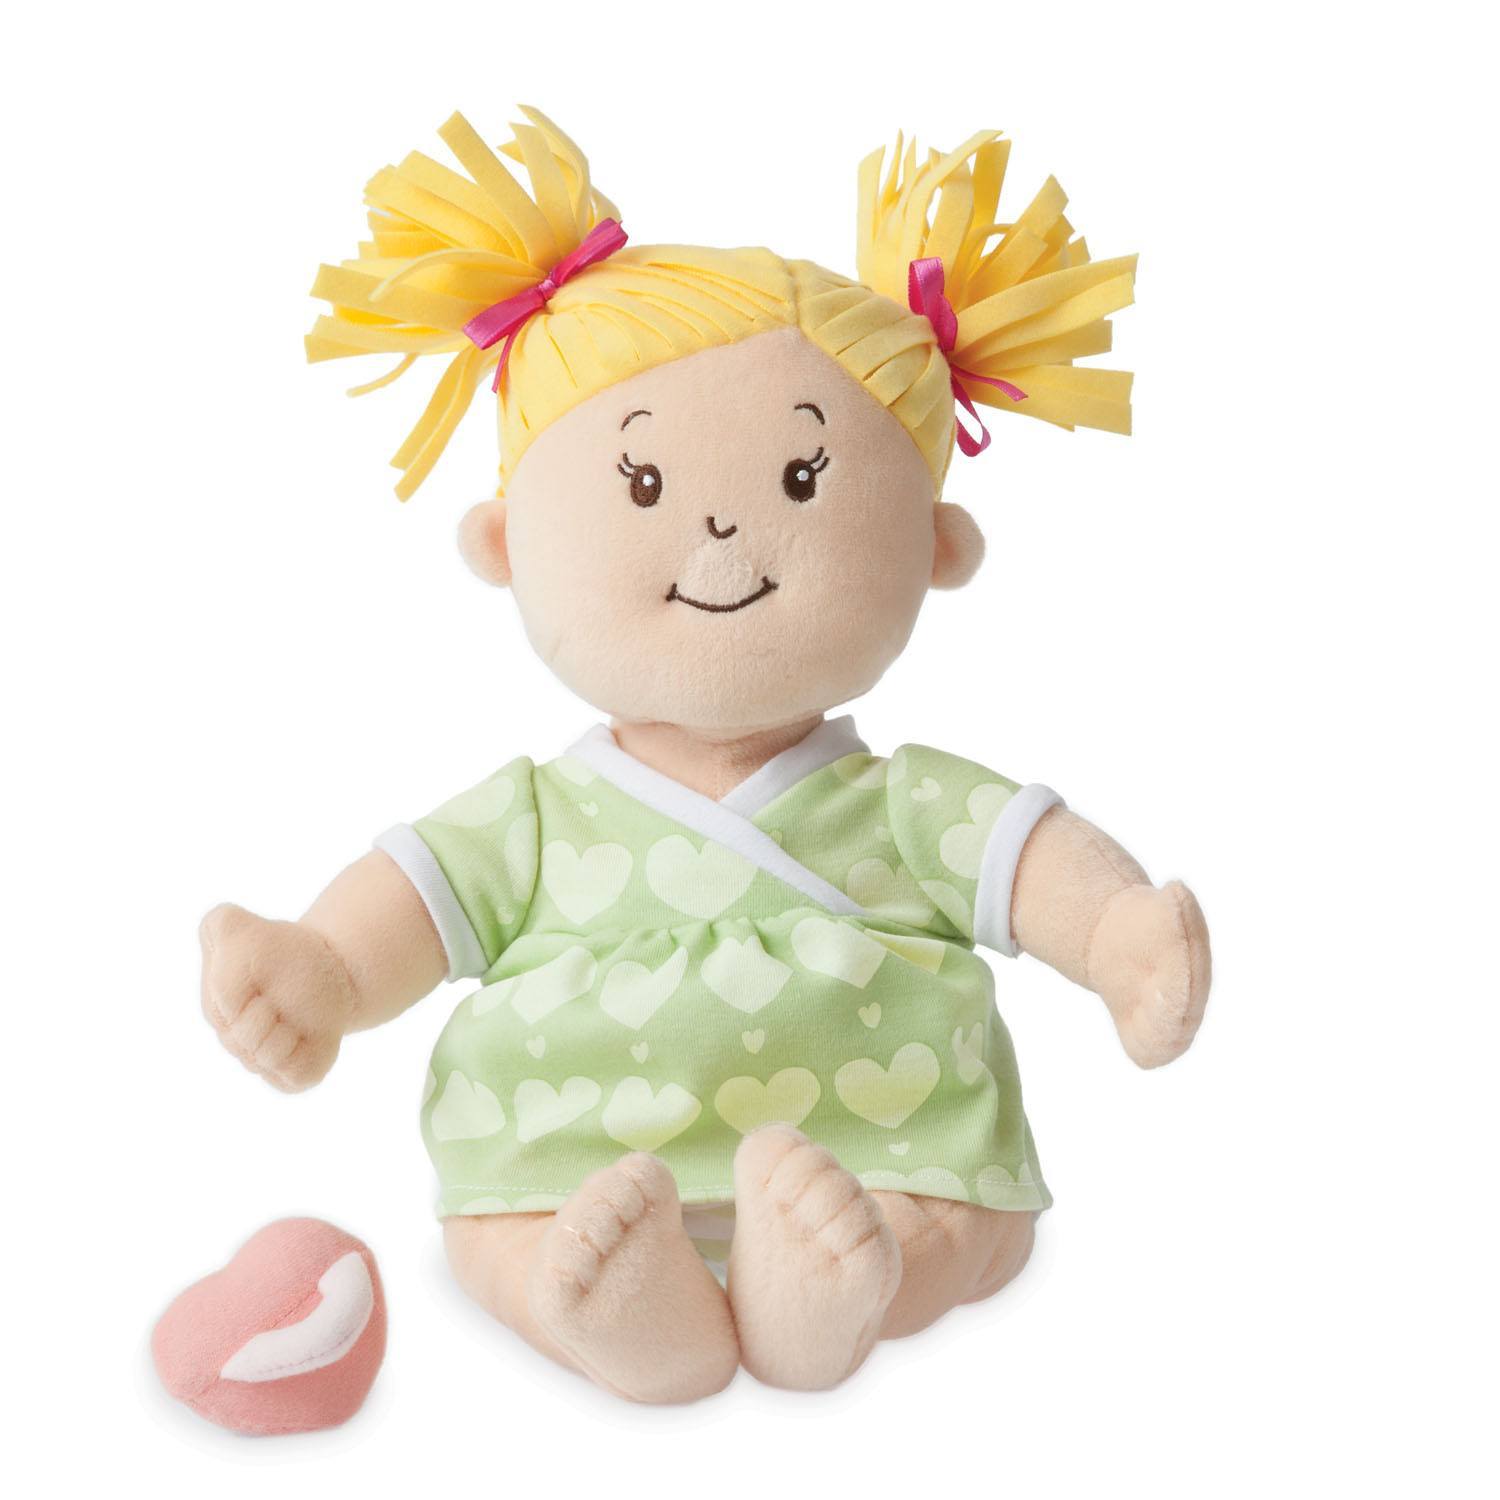 Baby Doll, Baby Stella Blonde Soft Nurturing By Manhattan Toy ...